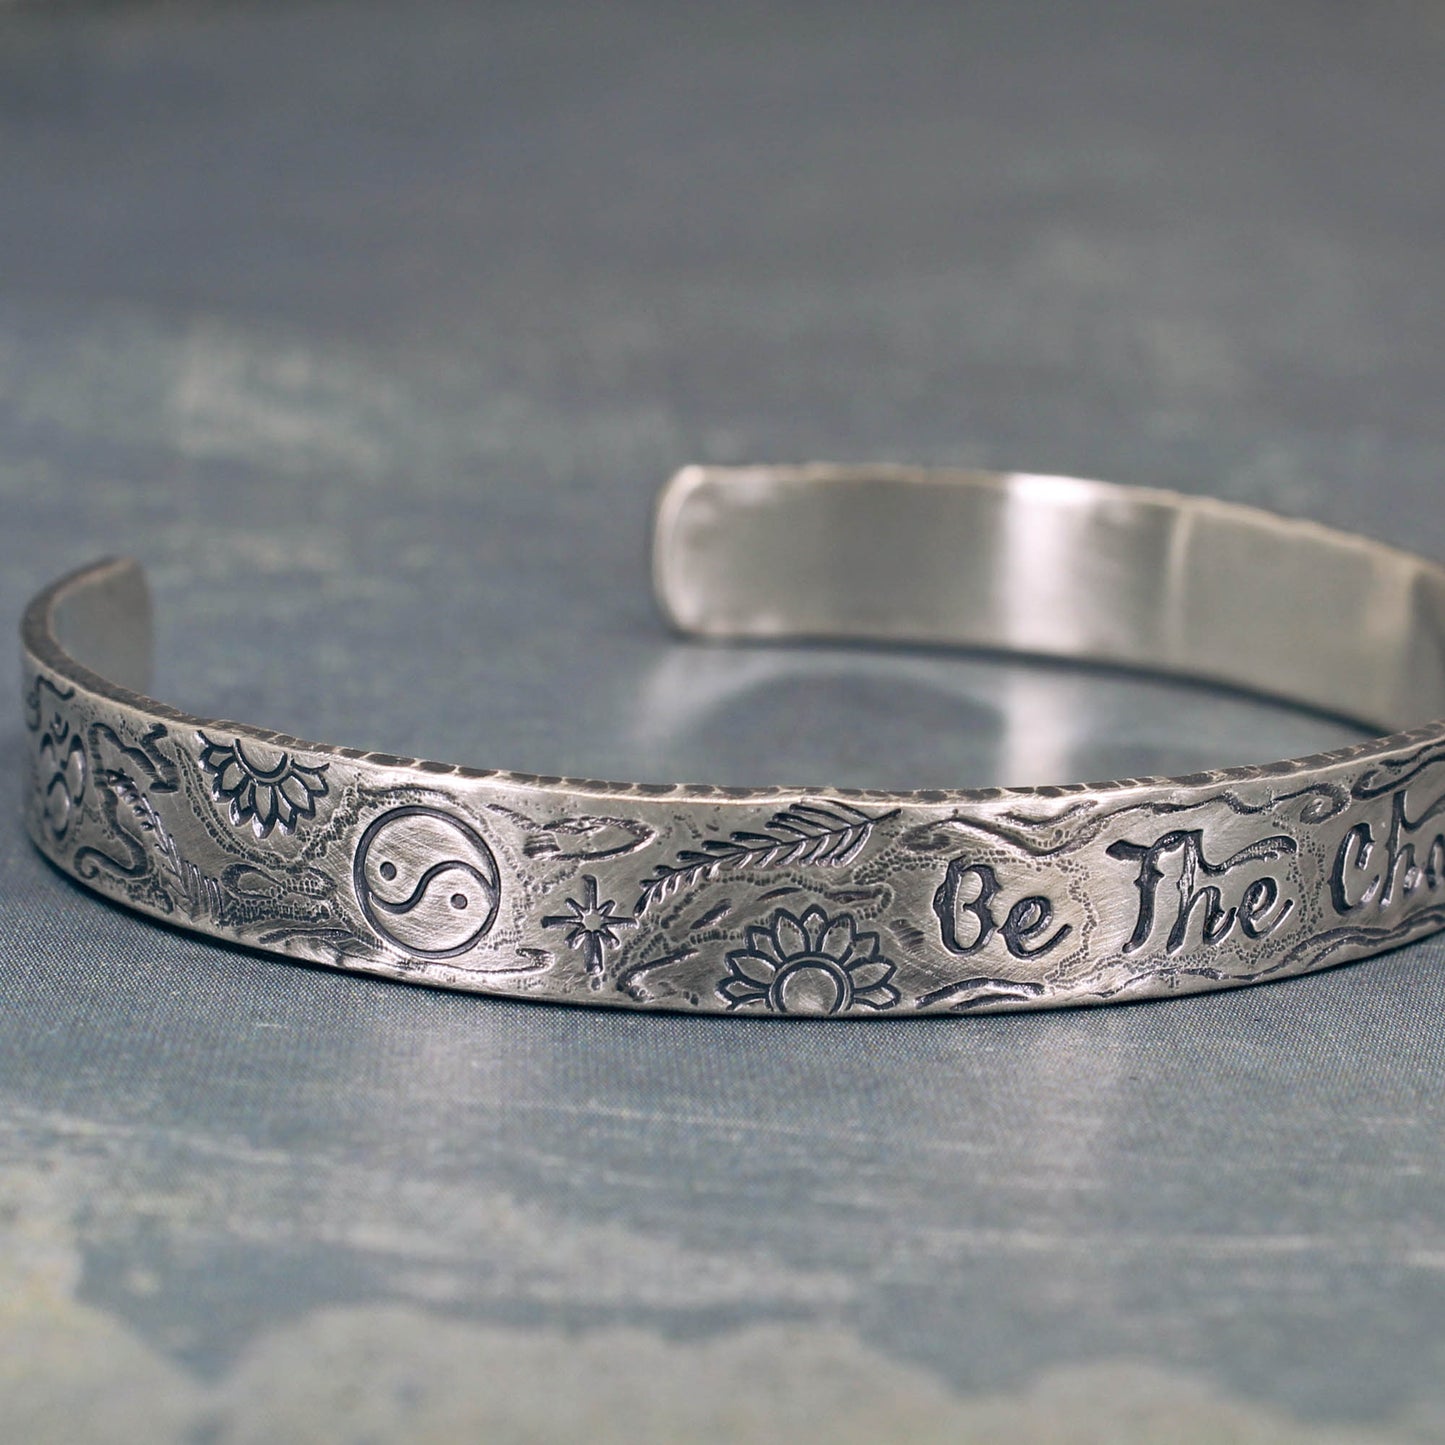 Inspirational silver bracelet